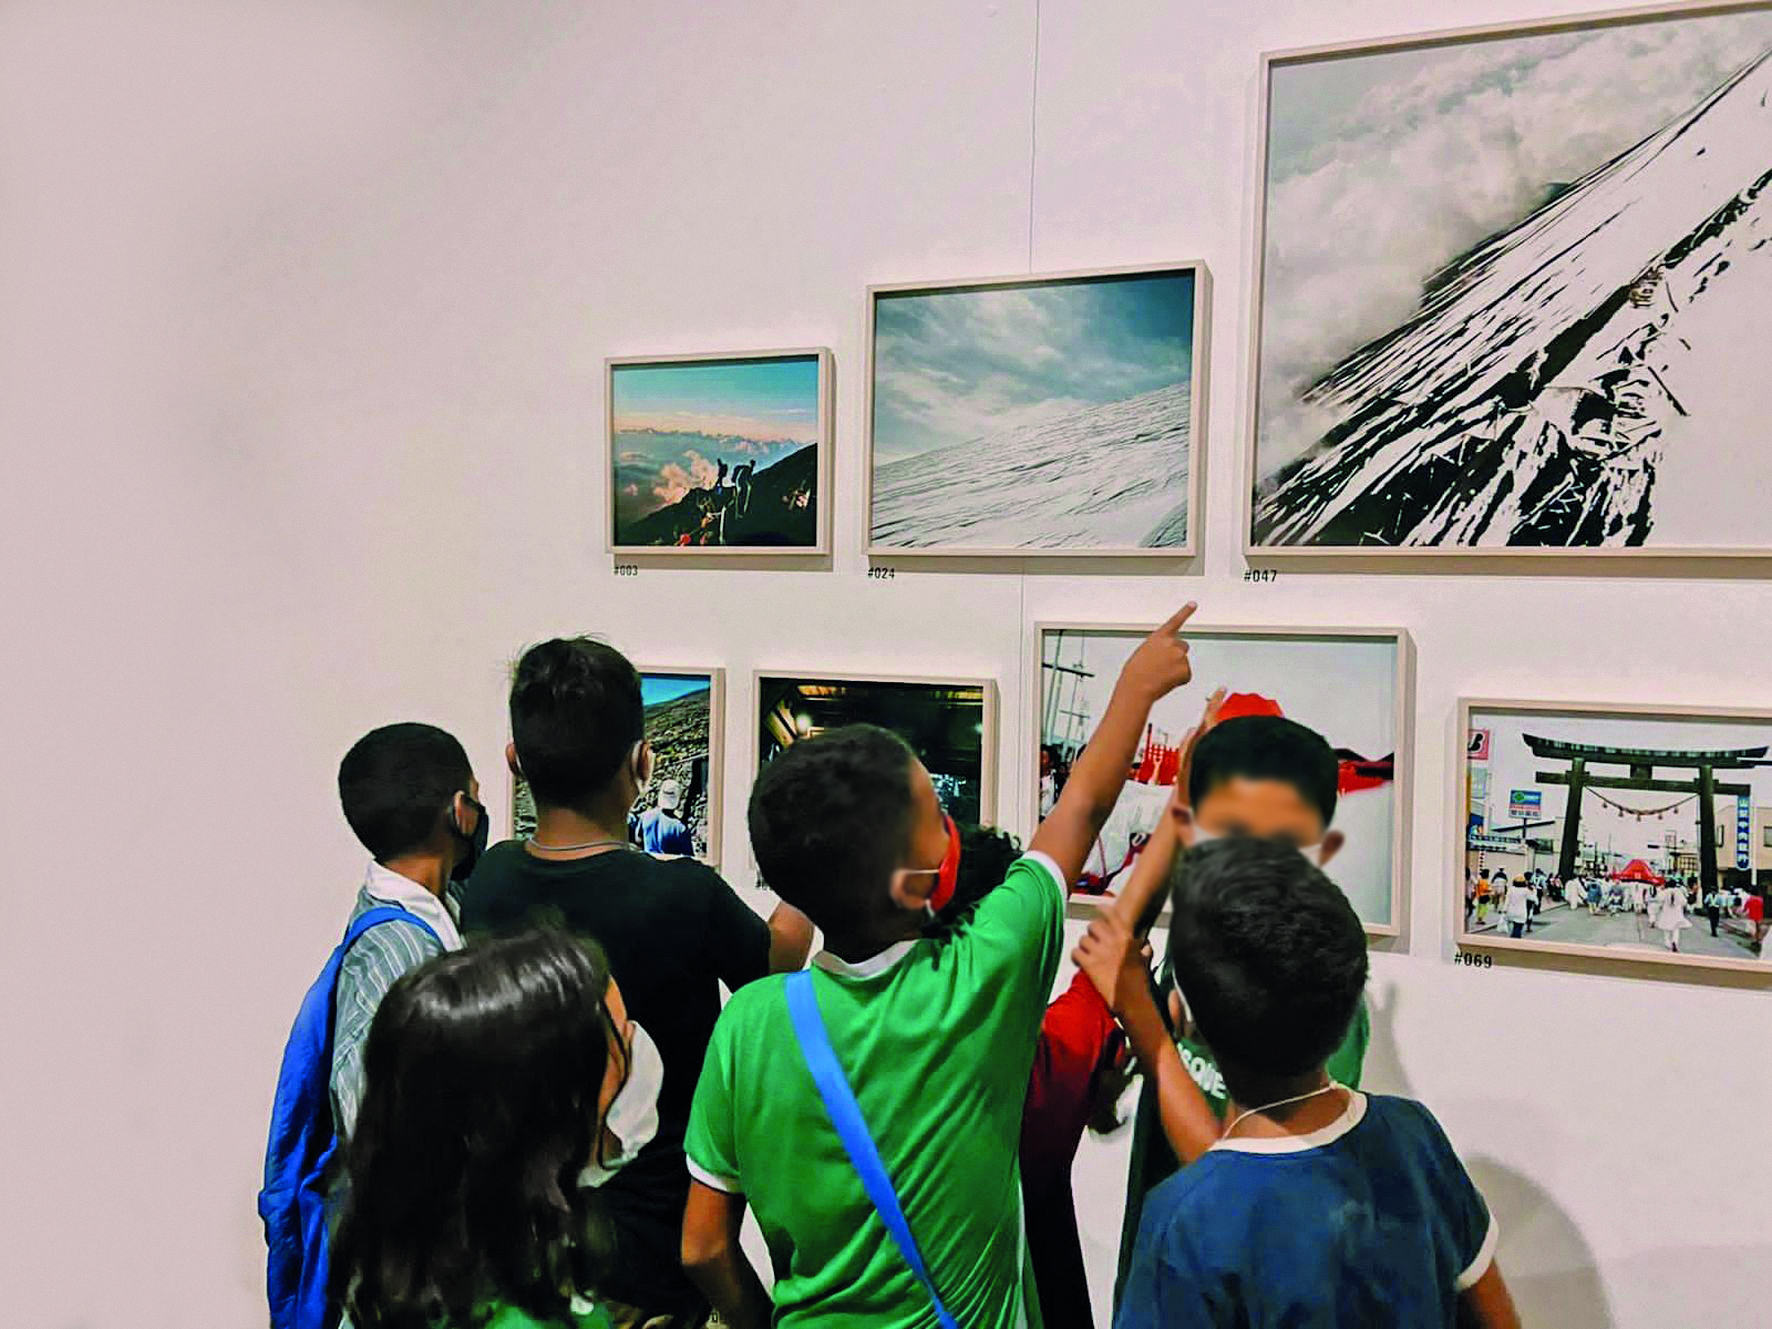 Fotografia. Um grupo de crianças à frente de quadros em exposição sobre uma parede branca.